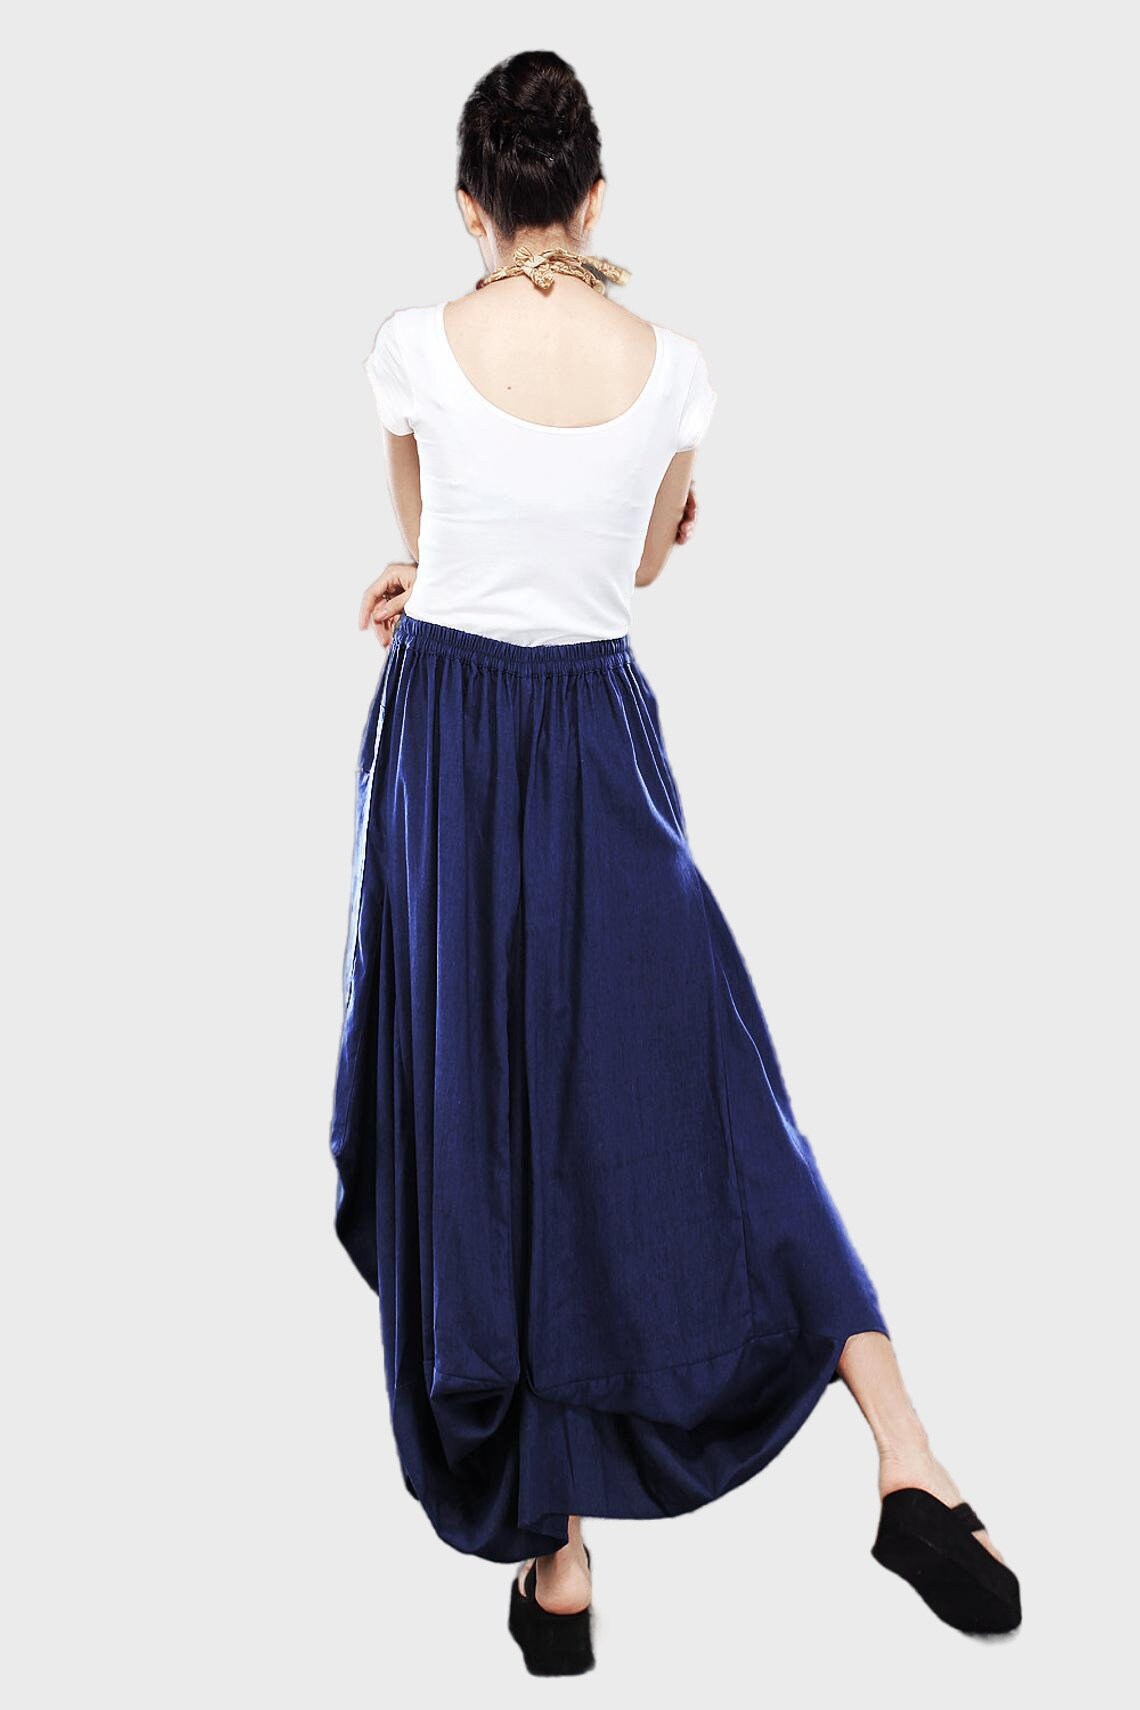 Blue Maxi Skirt Long Elegant Draped Full Summer Boho Skirt | Etsy